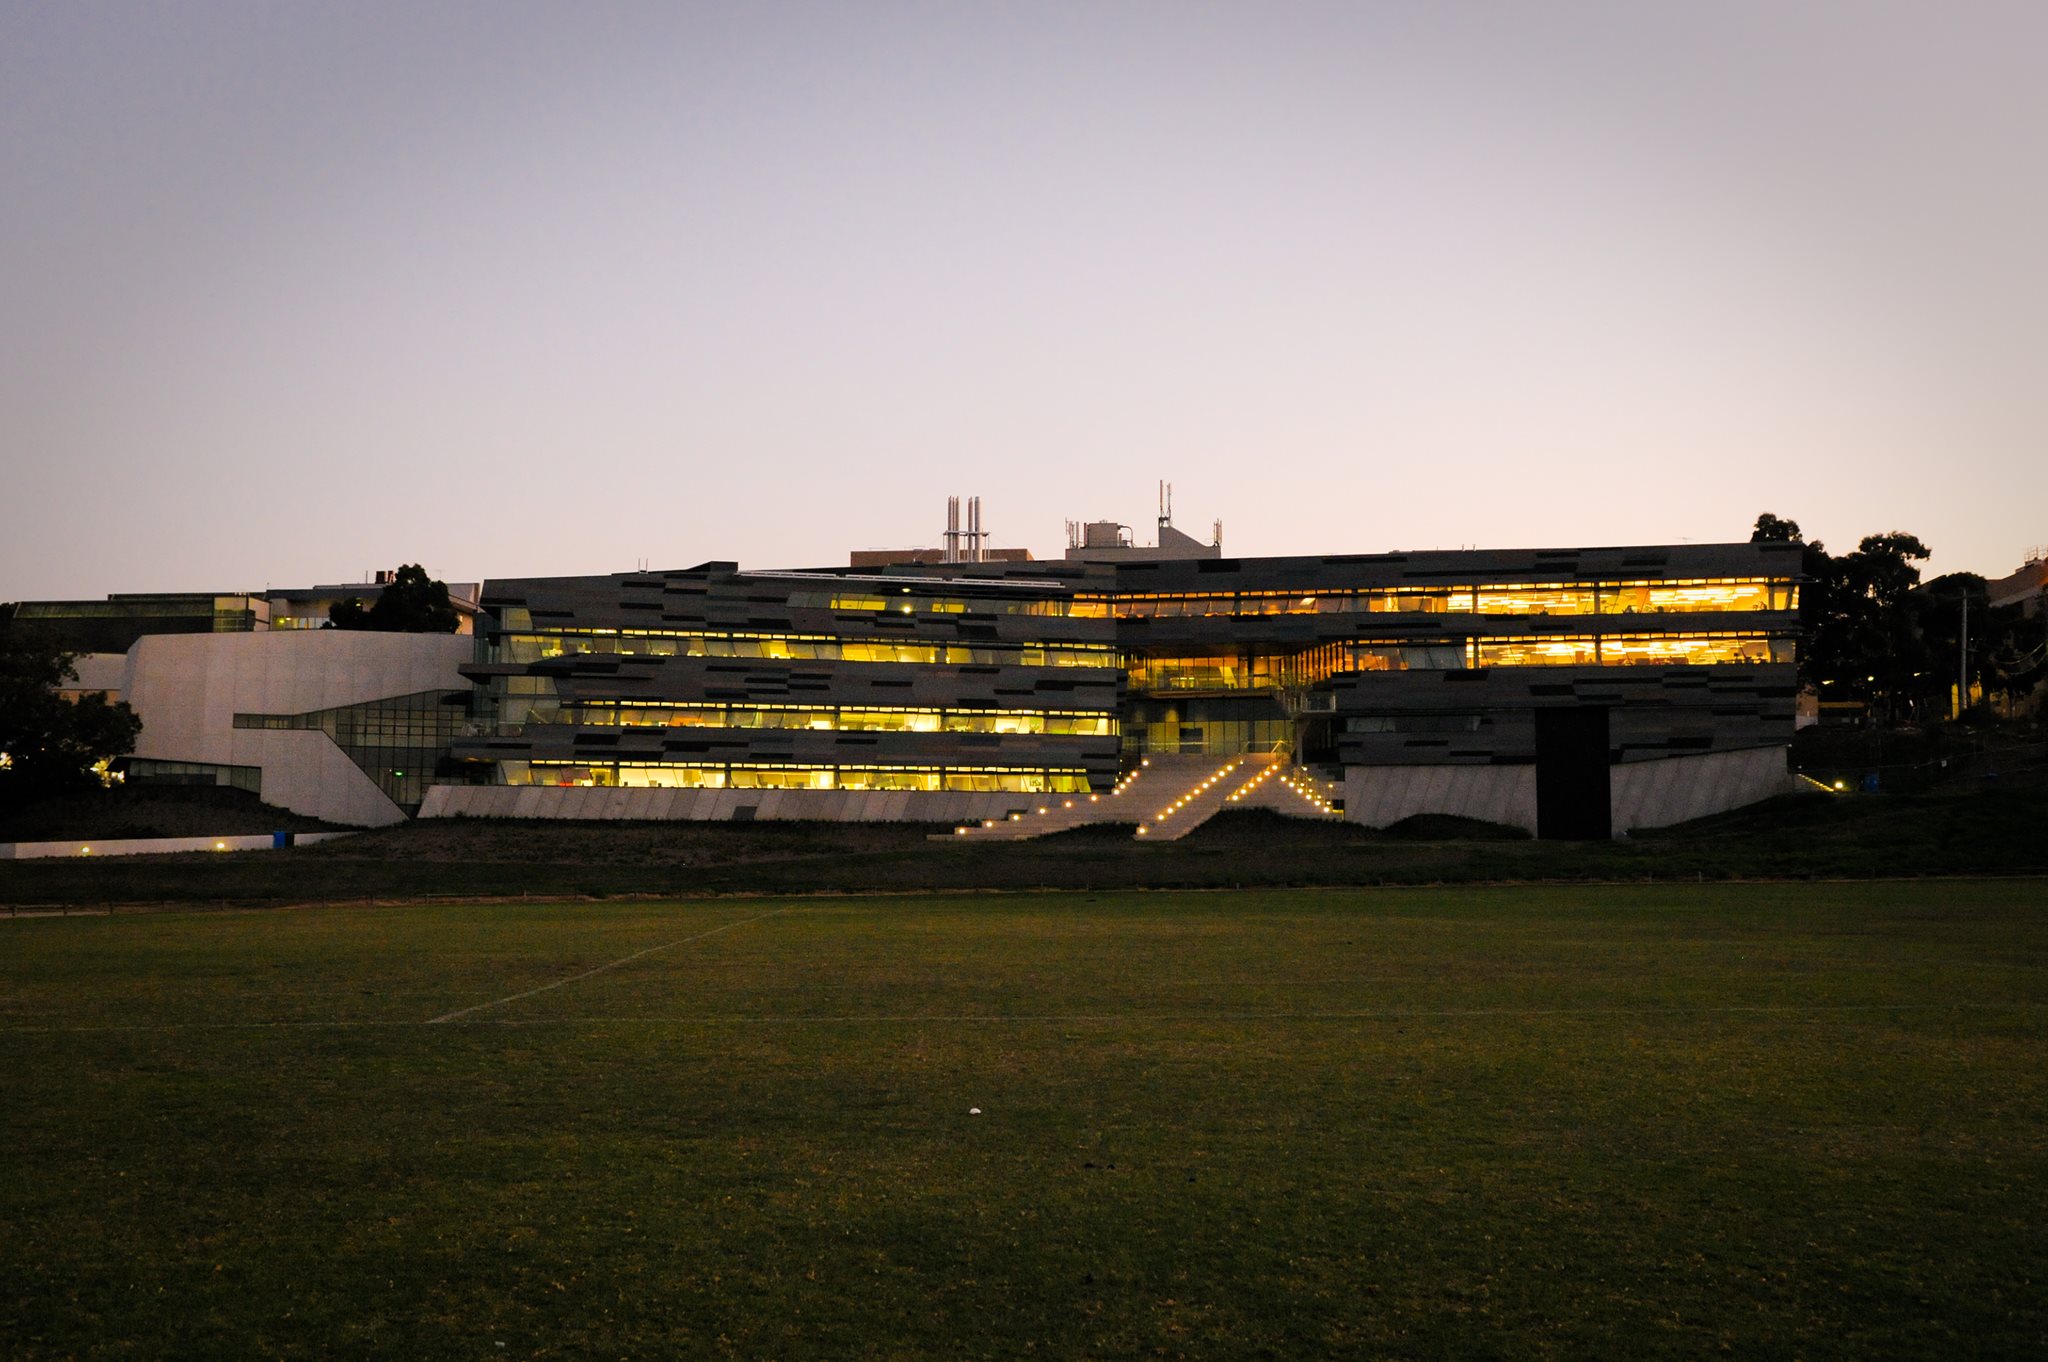 جامعة فيكتوريا – University Victoria